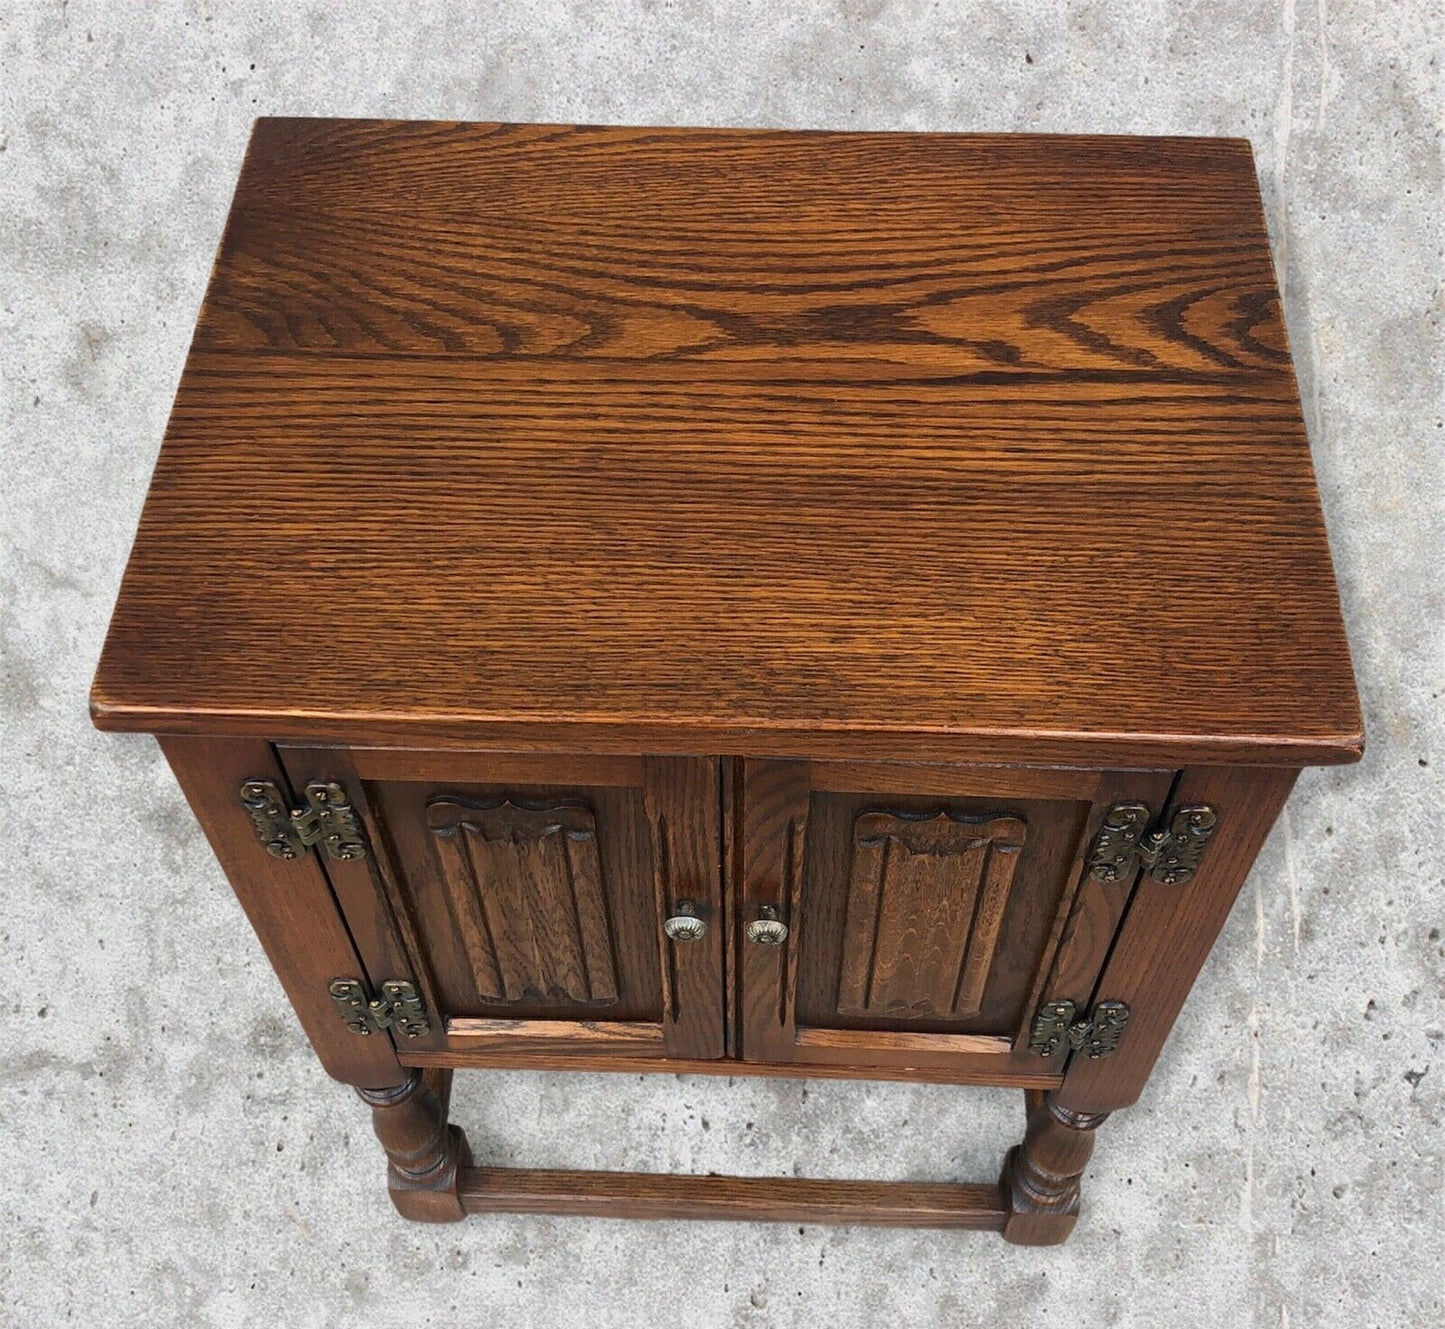 Old Charm Bedside Cabinet / Vintage Bedside Table ( SOLD )